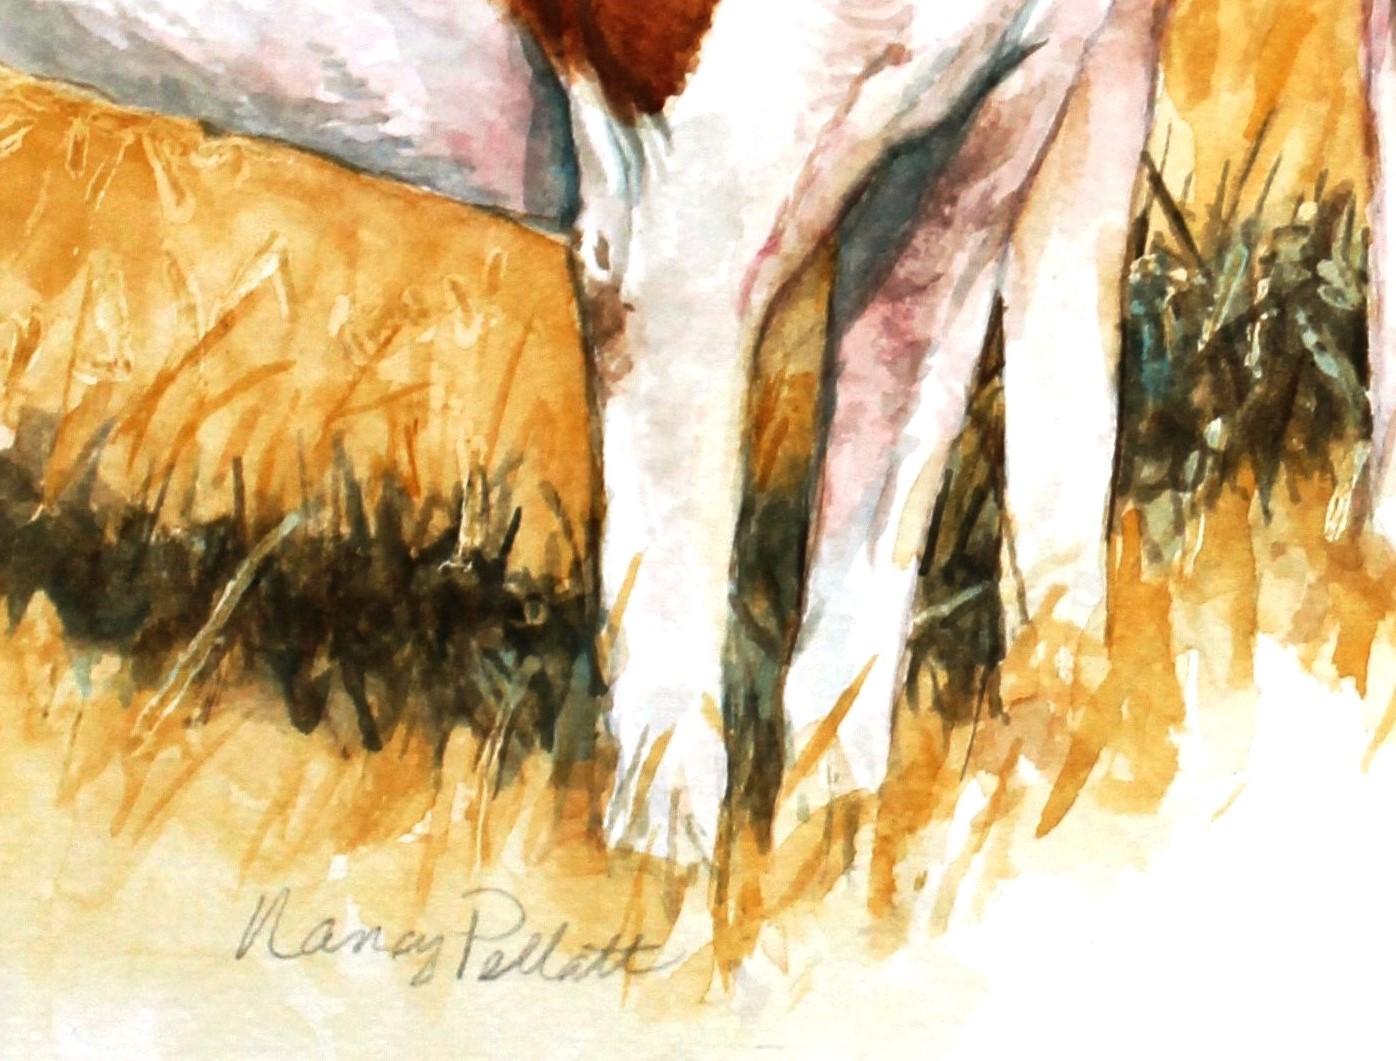 dog watercolor portrait